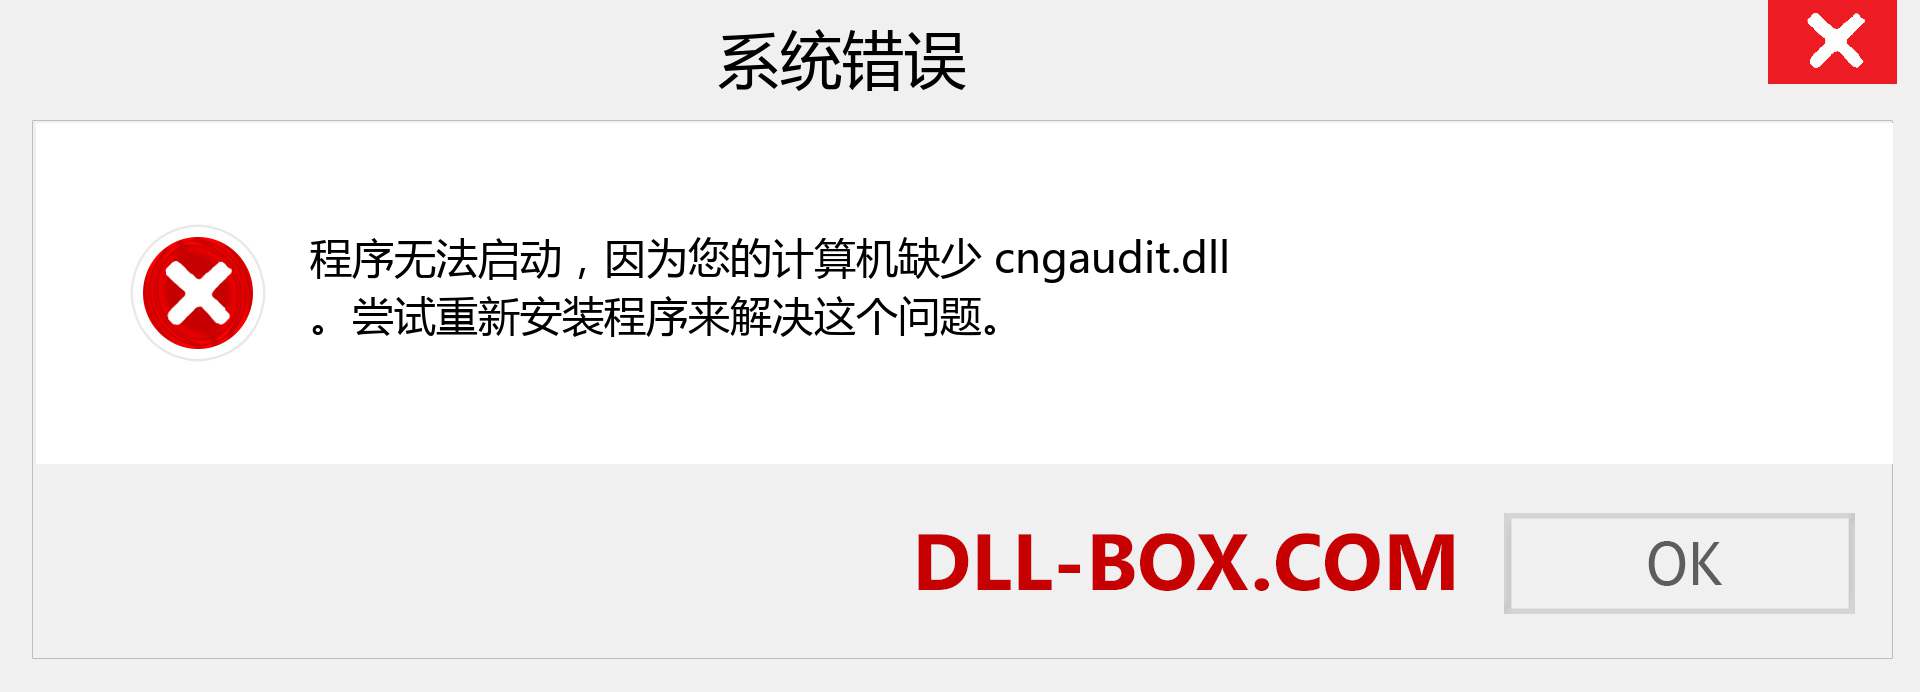 cngaudit.dll 文件丢失？。 适用于 Windows 7、8、10 的下载 - 修复 Windows、照片、图像上的 cngaudit dll 丢失错误